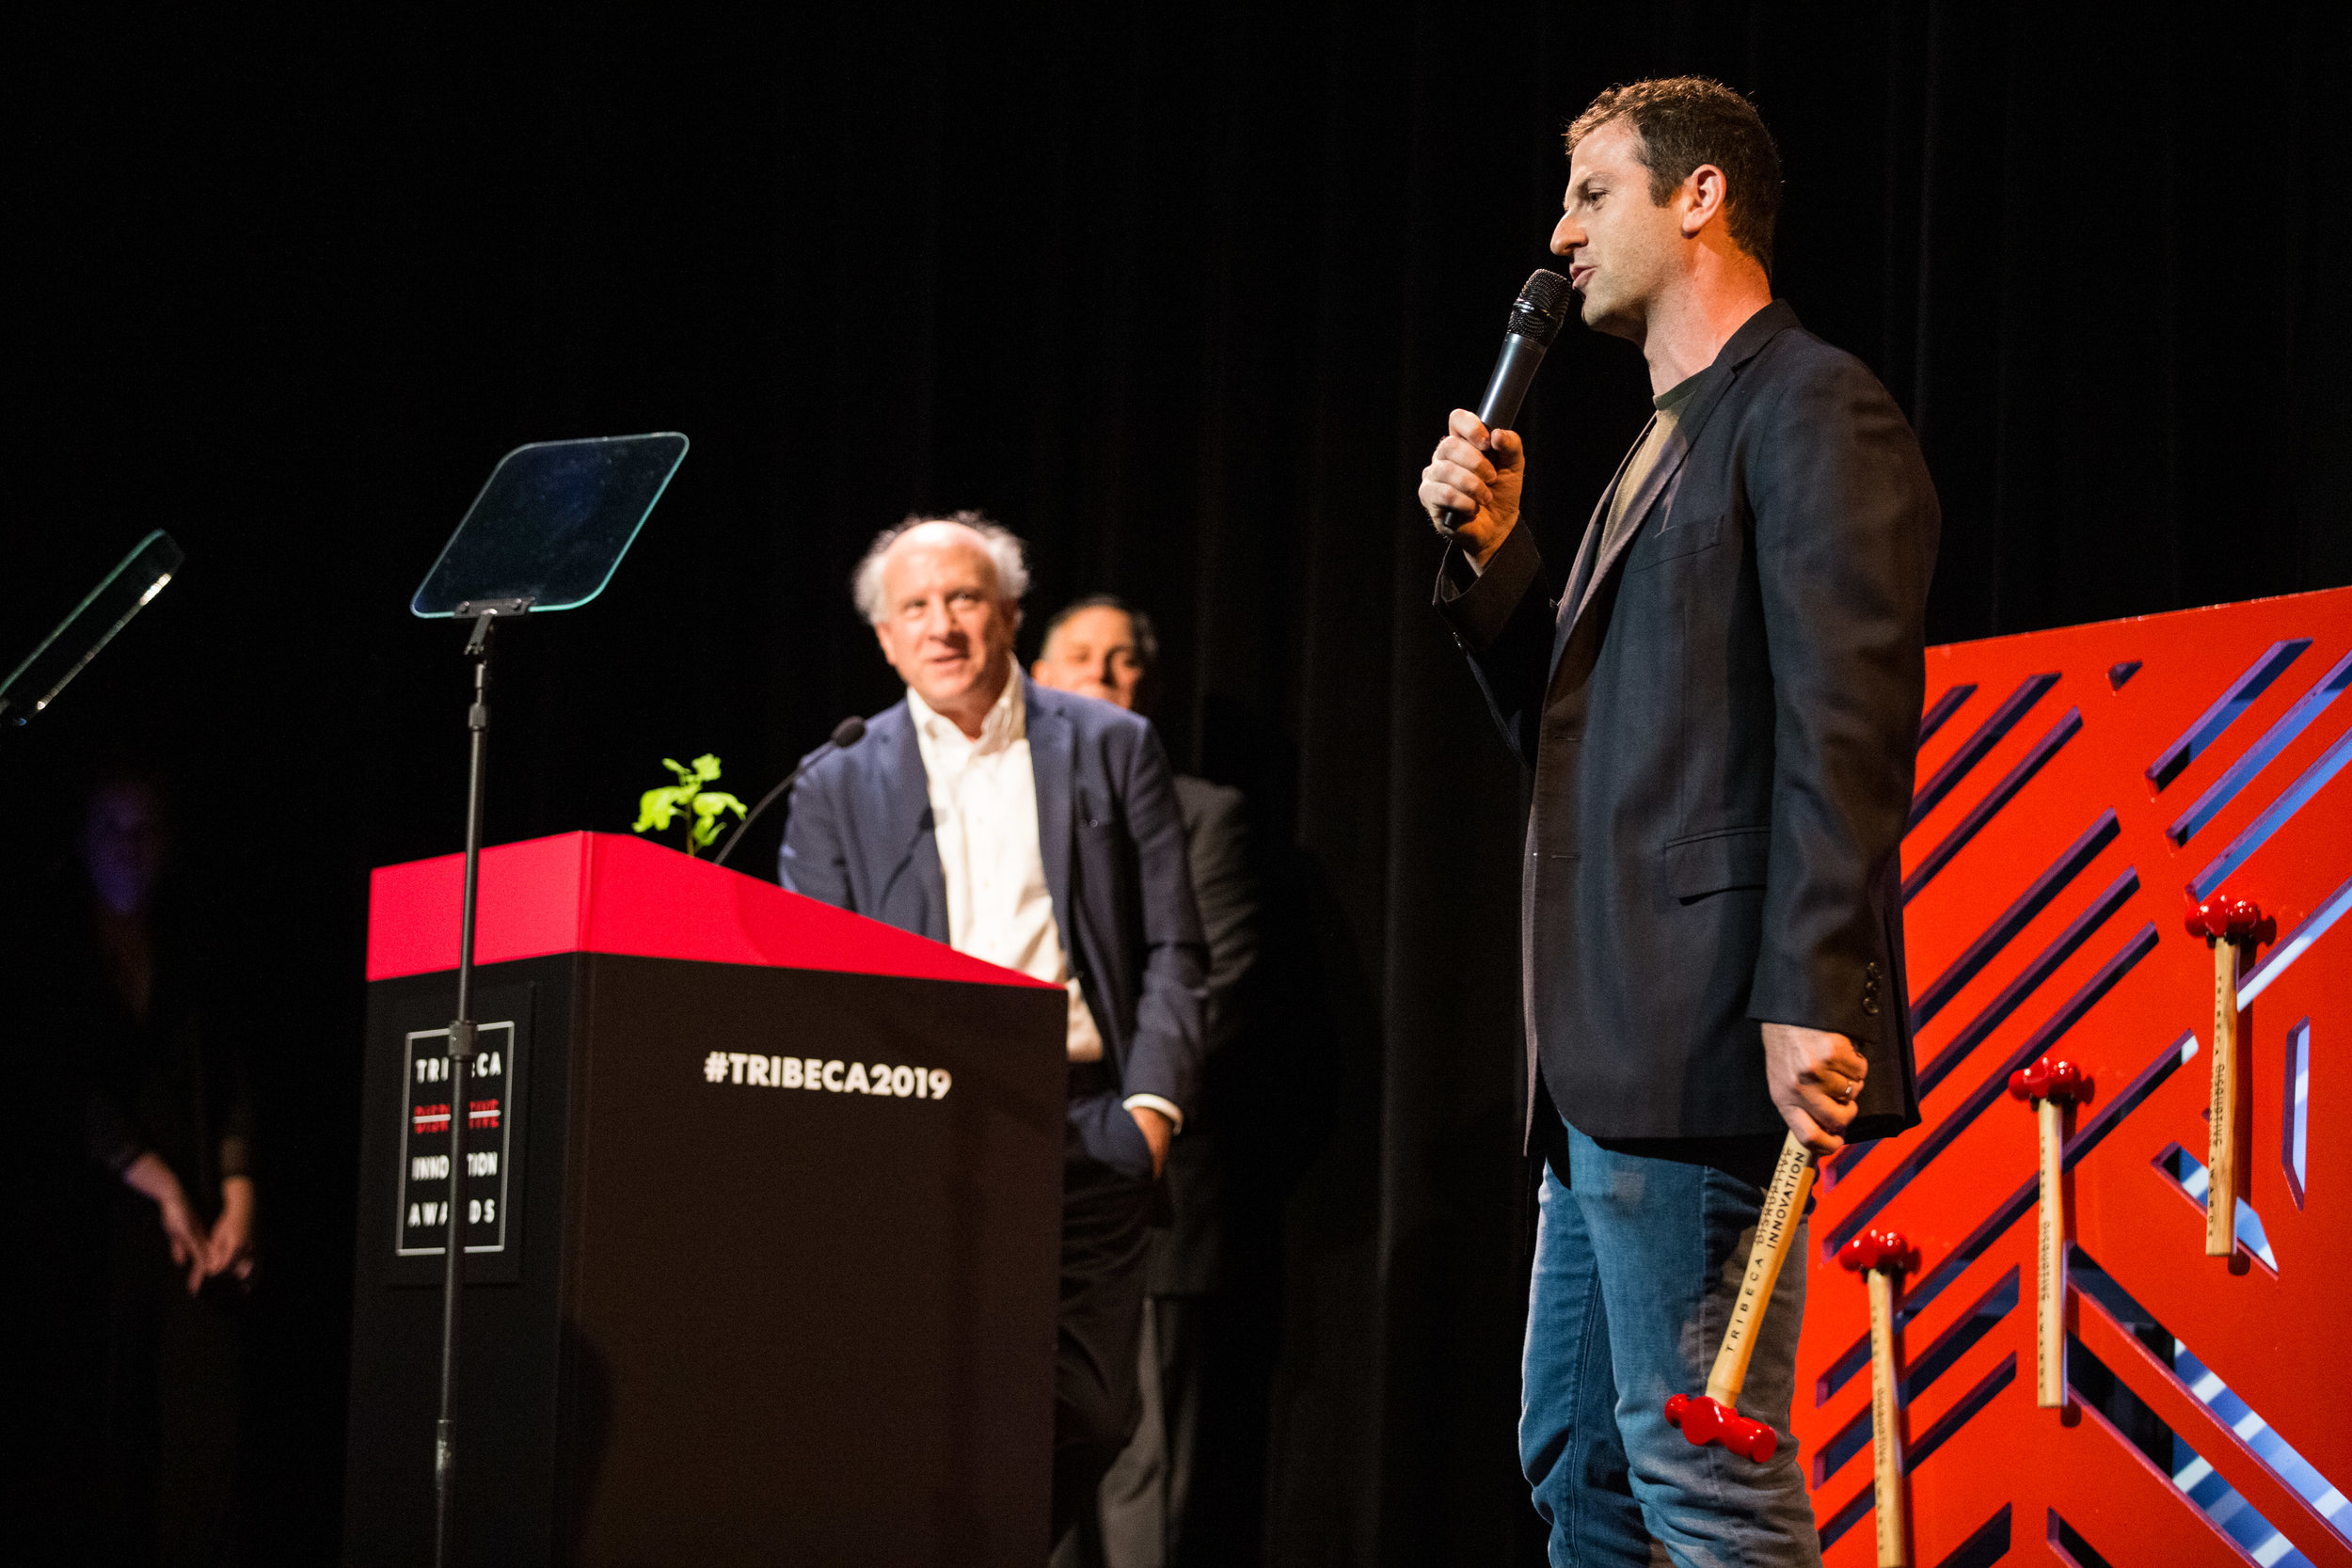 20190503-Tribeca Disruptive Innovation Awards-1163.jpg